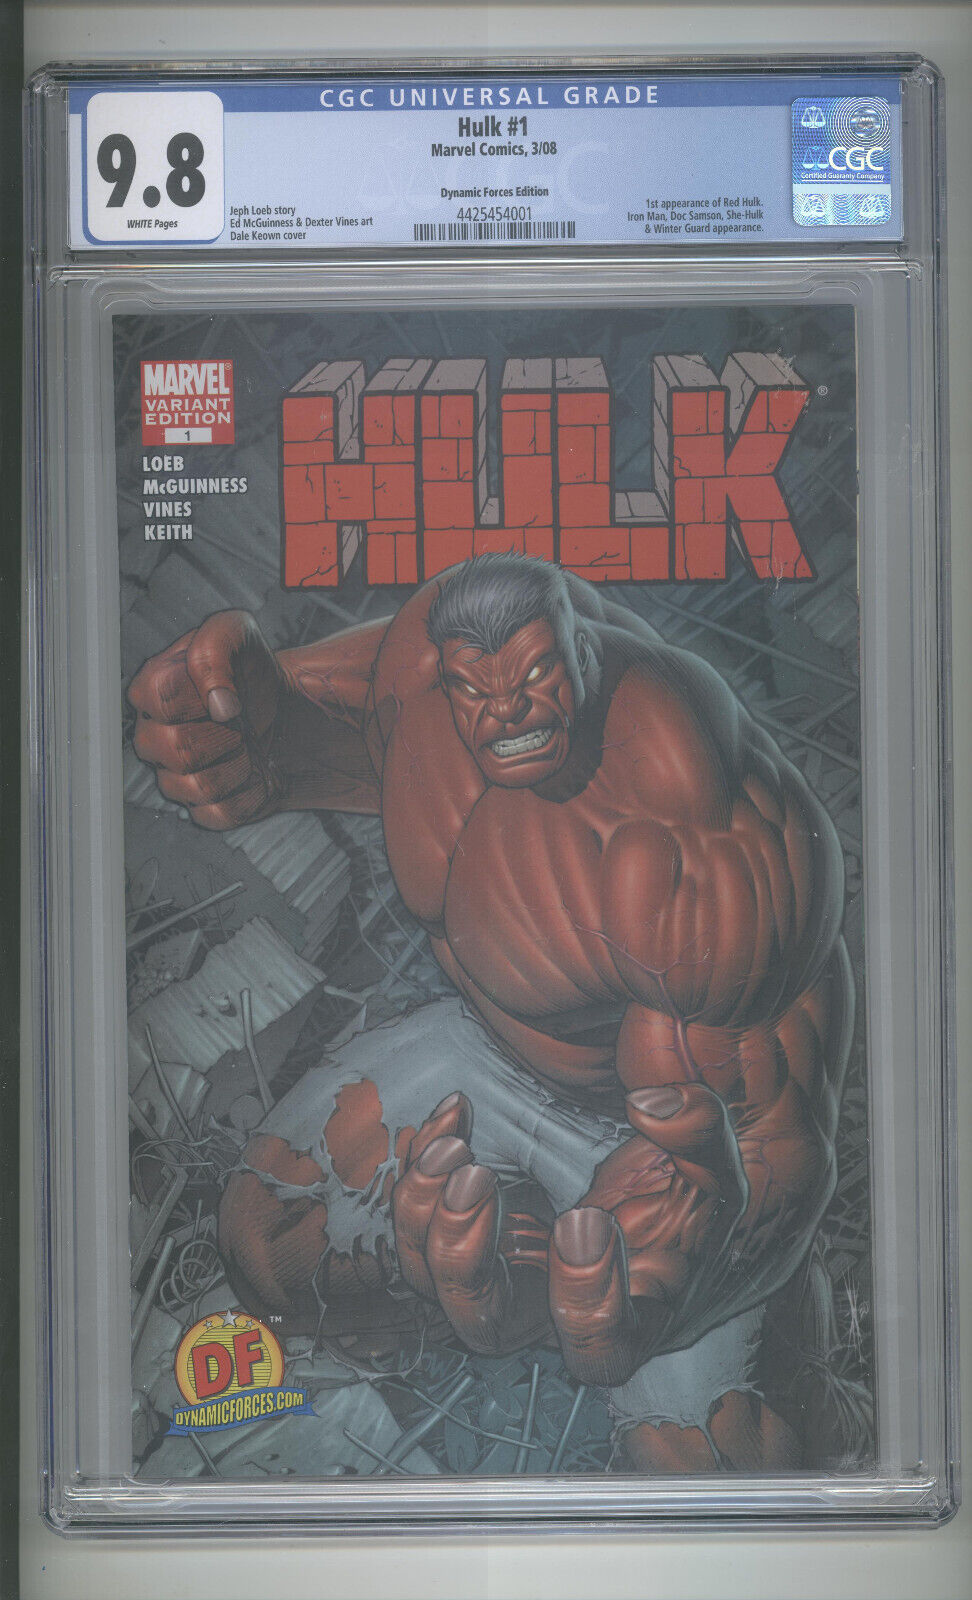 Hulk (2008) # 1 Dynamic Forces Edition CGC 9.8 NM/MT